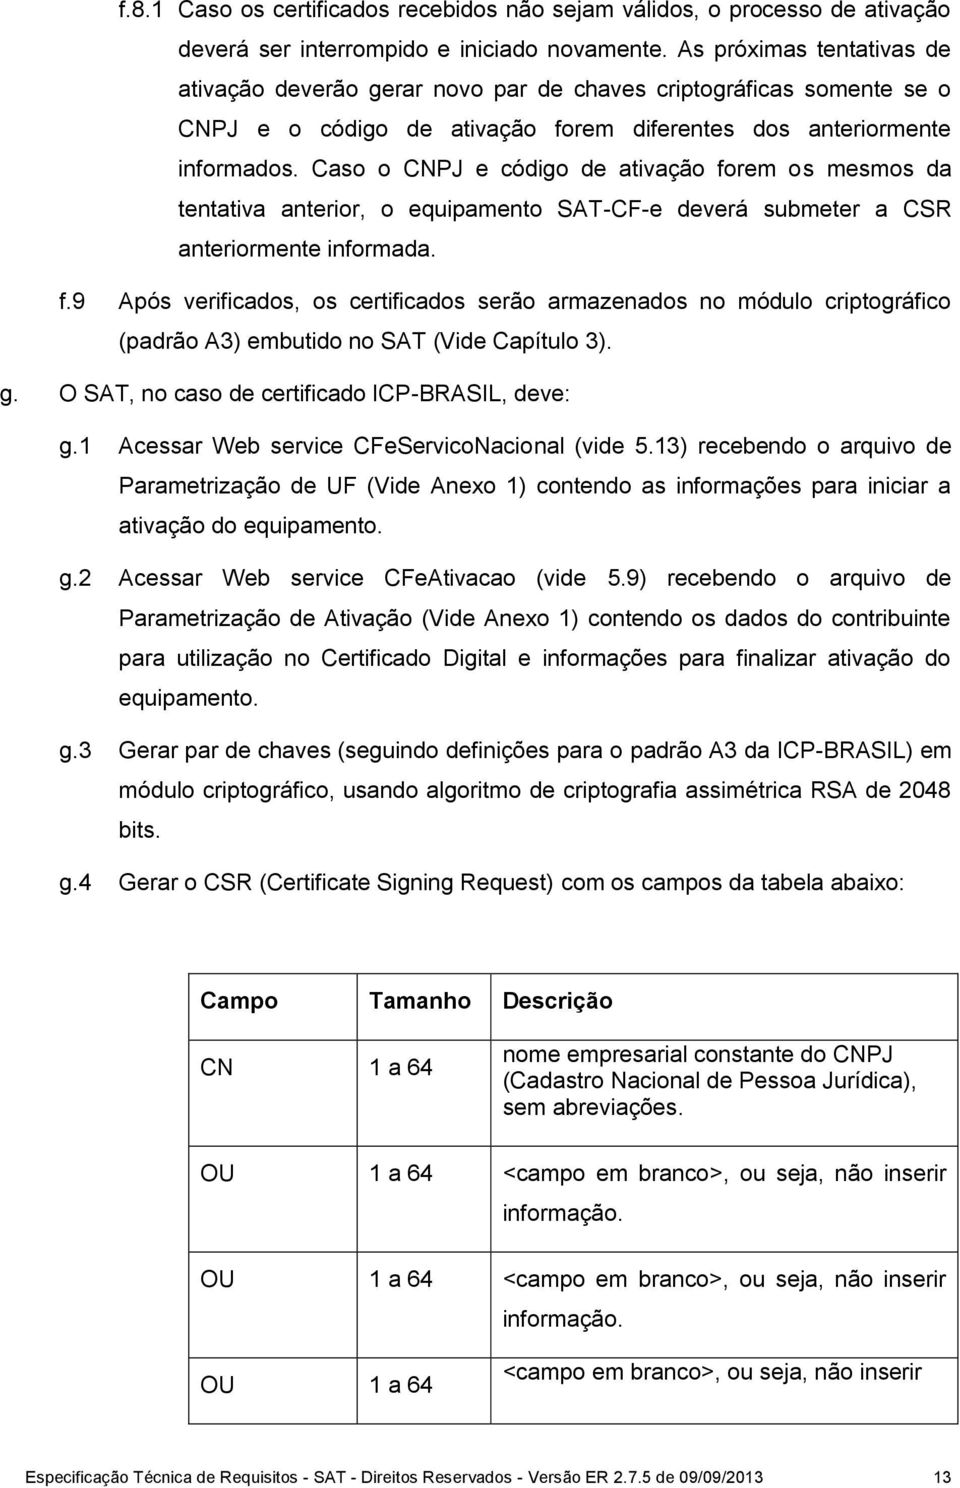 Caso o CNPJ e código de ativação forem os mesmos da tentativa anterior, o equipamento SAT-CF-e deverá submeter a CSR anteriormente informada. f.9 Após verificados, os certificados serão armazenados no módulo criptográfico (padrão A3) embutido no SAT (Vide Capítulo 3).